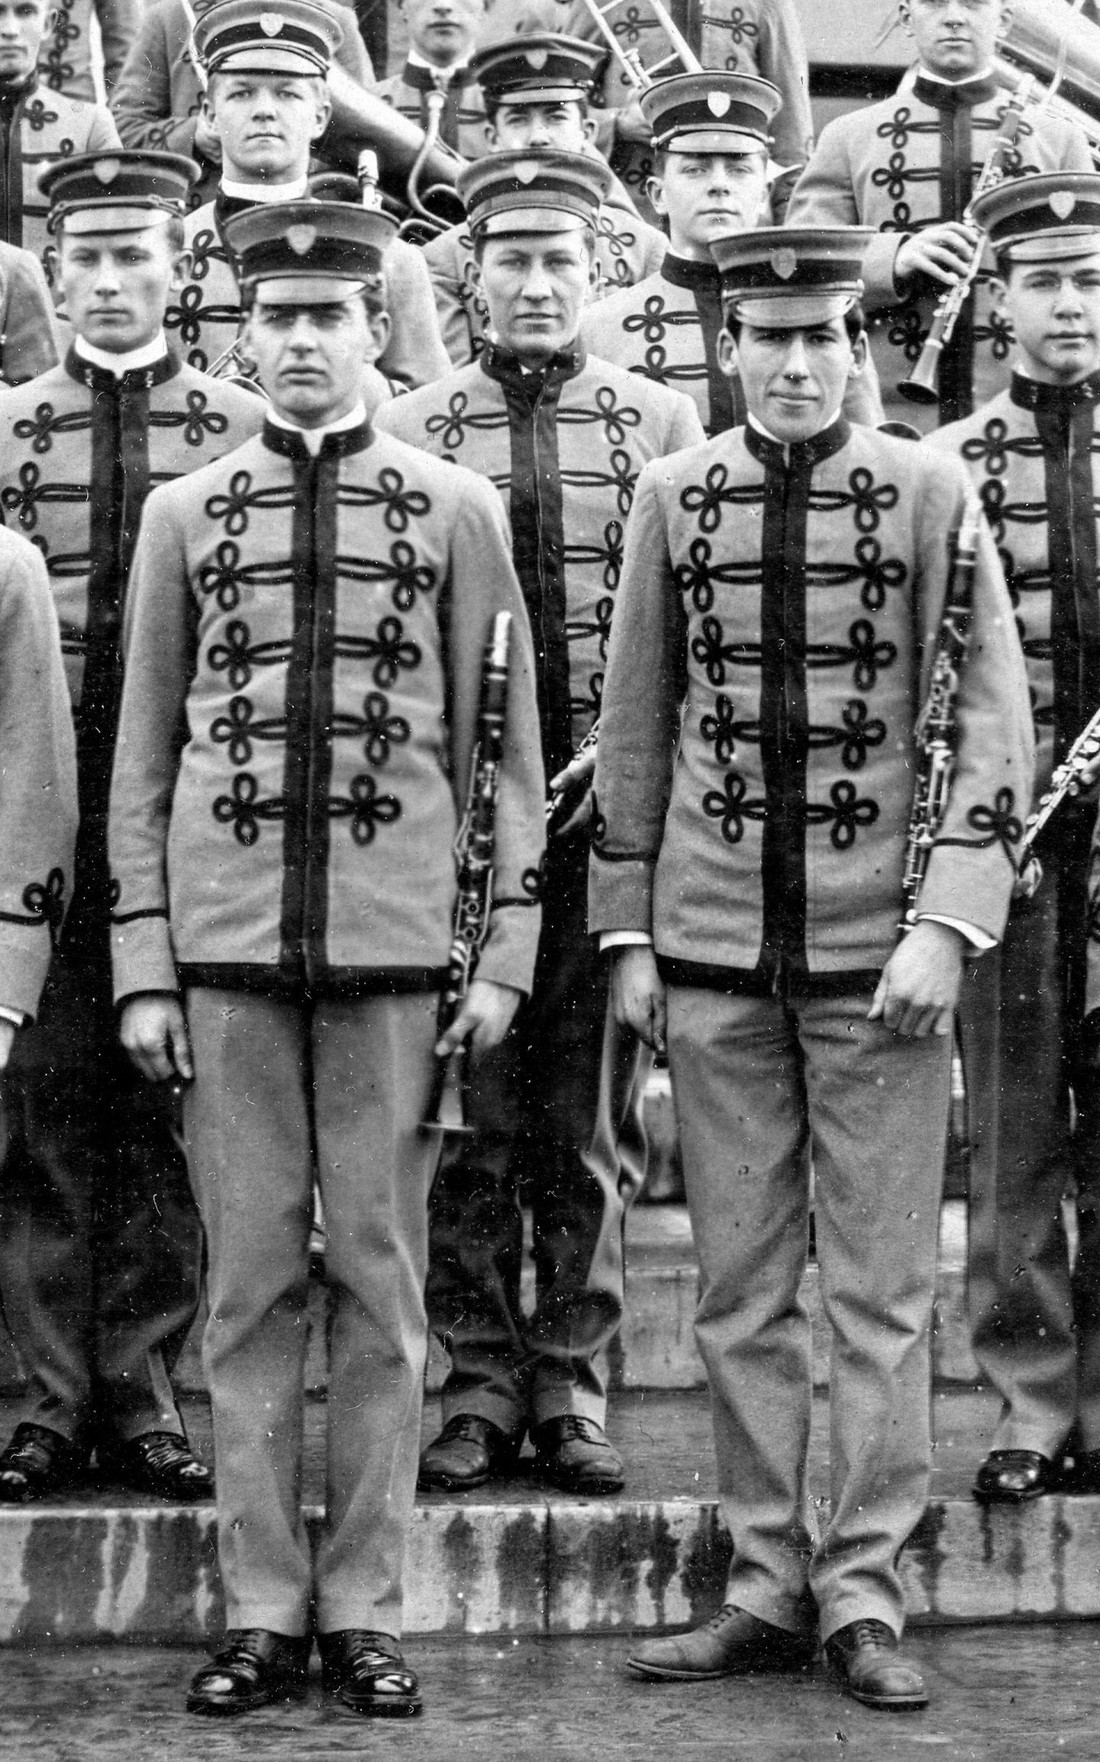 Cadet band uniform